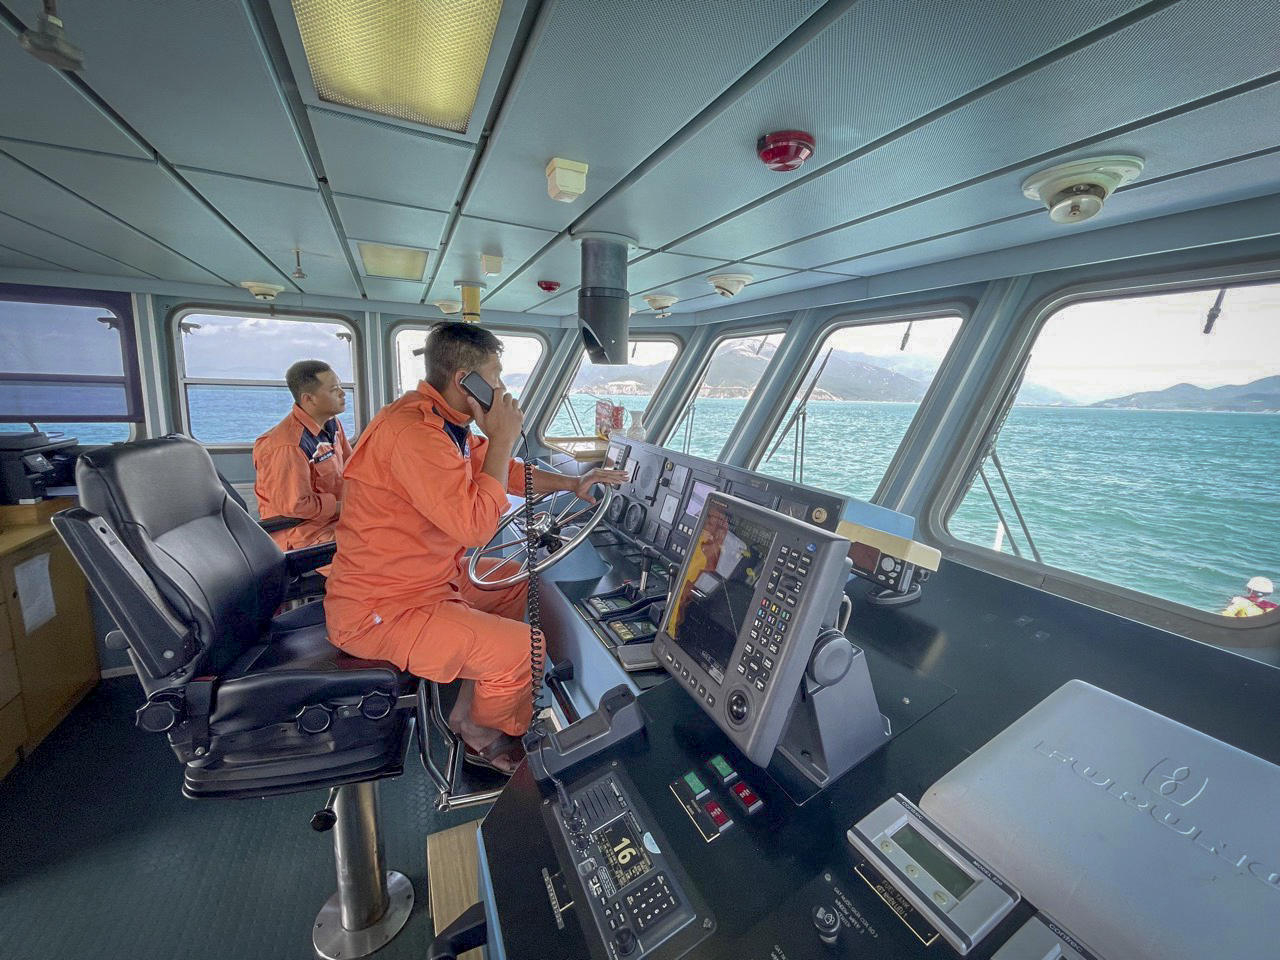 Thuyền viên tàu SAR 273 liên lạc với một tàu nước ngoài để cứu nạn.

